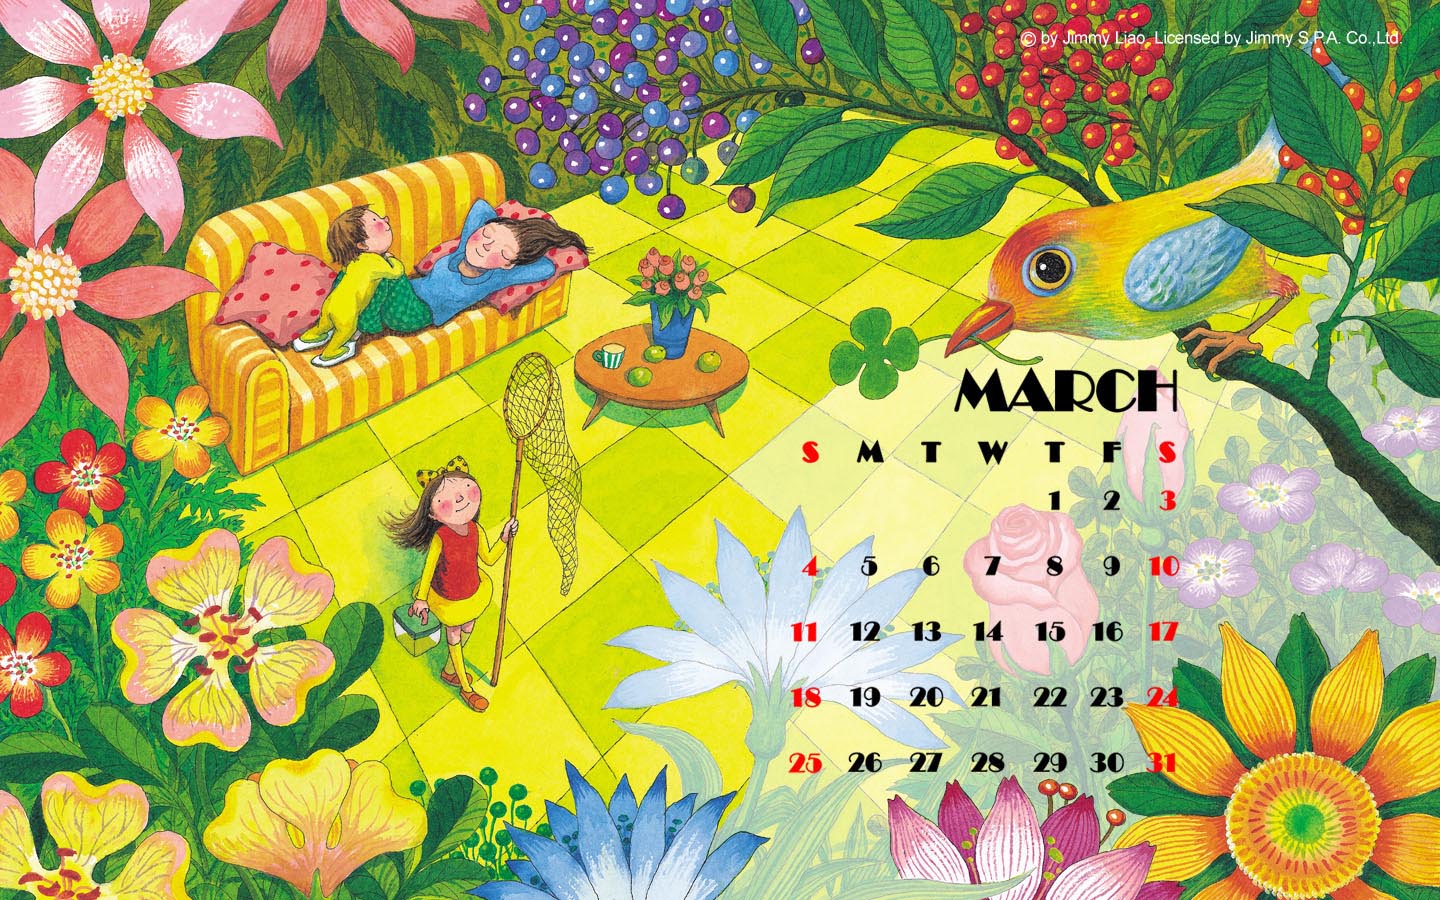 Jimi Comics March 2012 Calendar Wallpaper